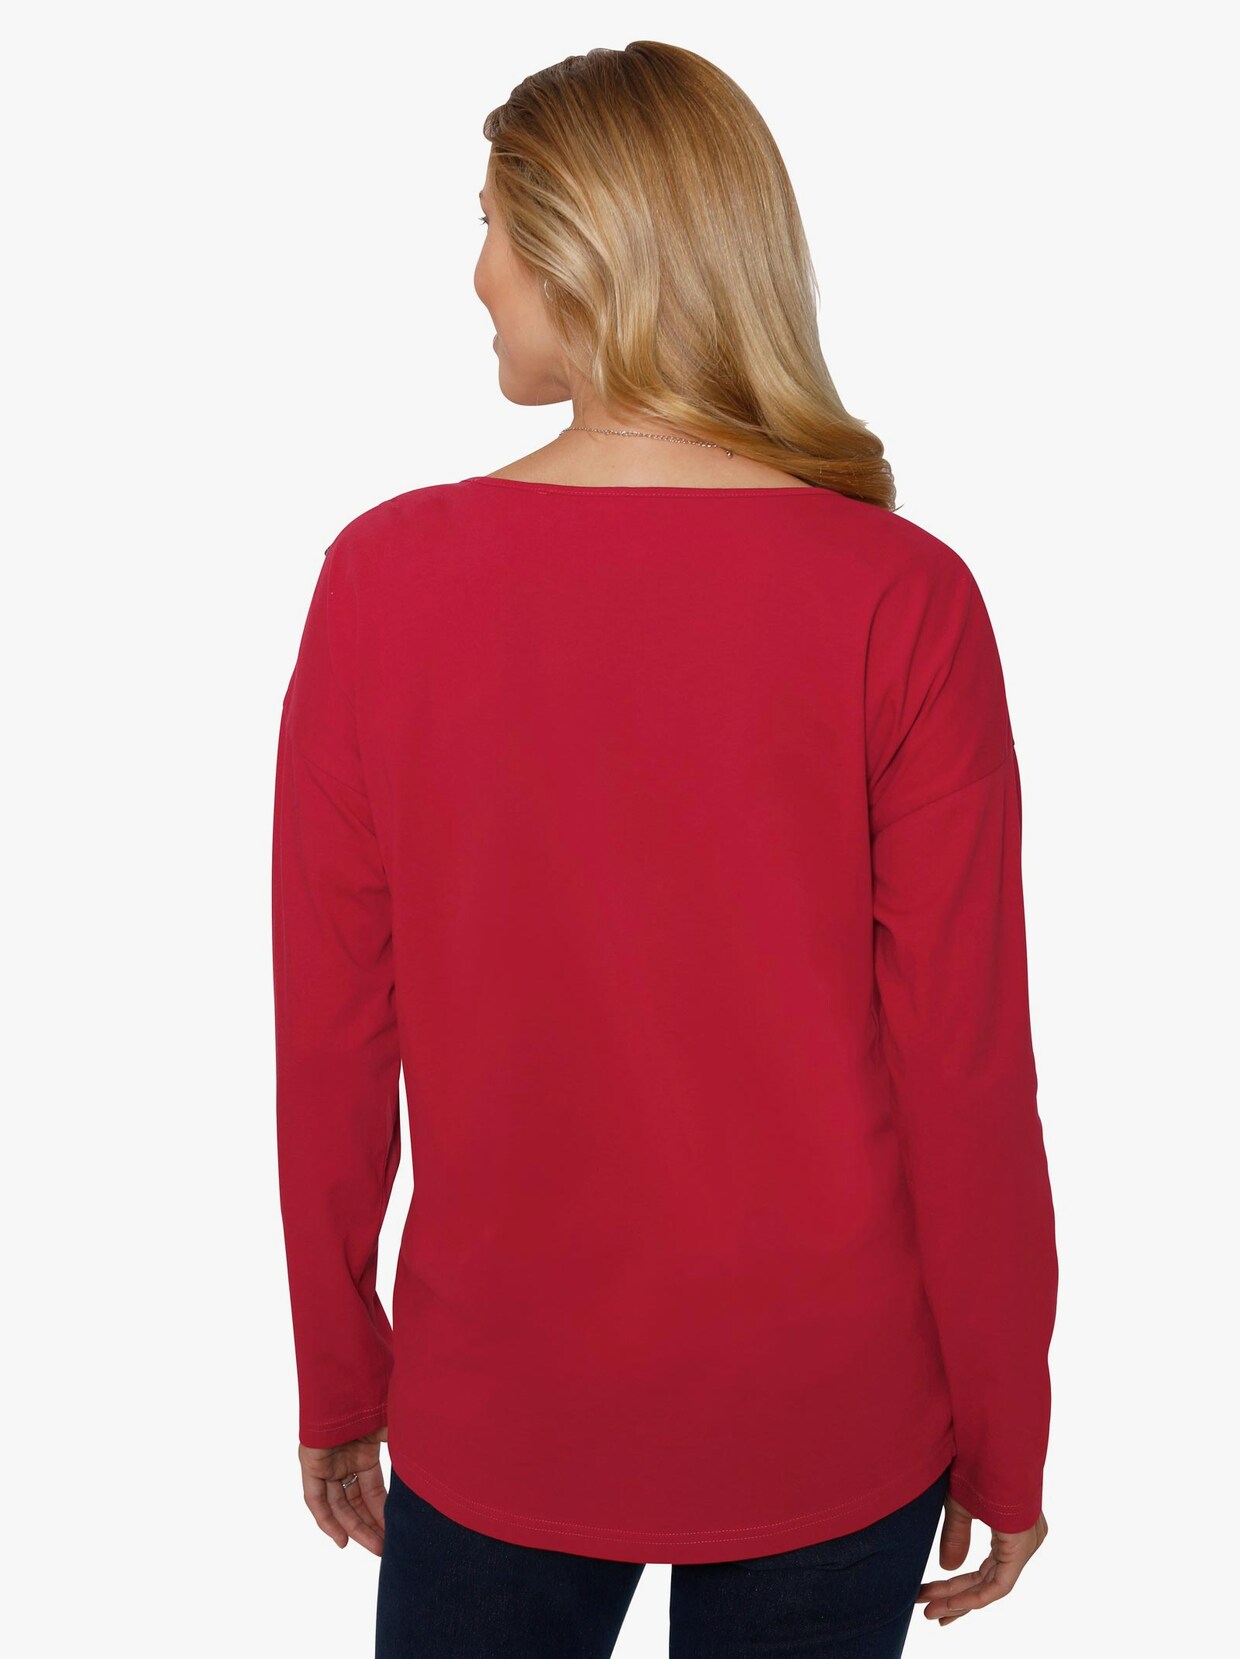 Tričko s dlouhým rukávem - červená